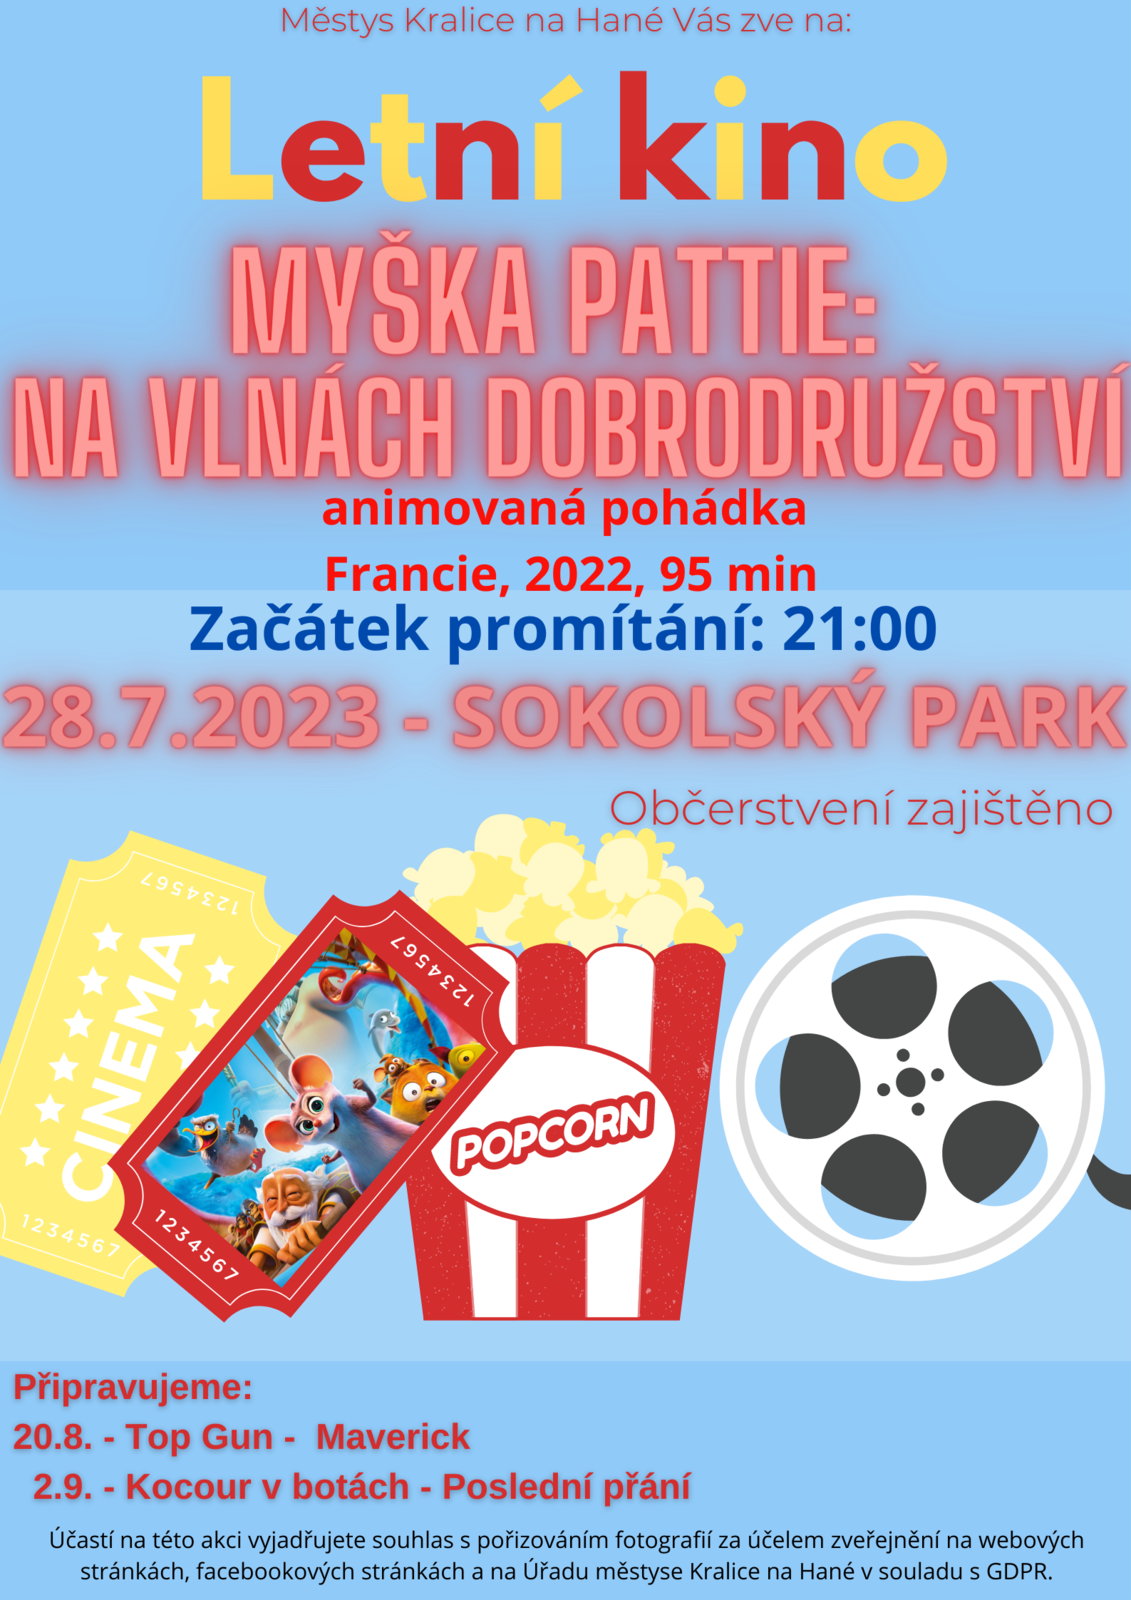 Letní kino Plakát - Myška Pattie.png